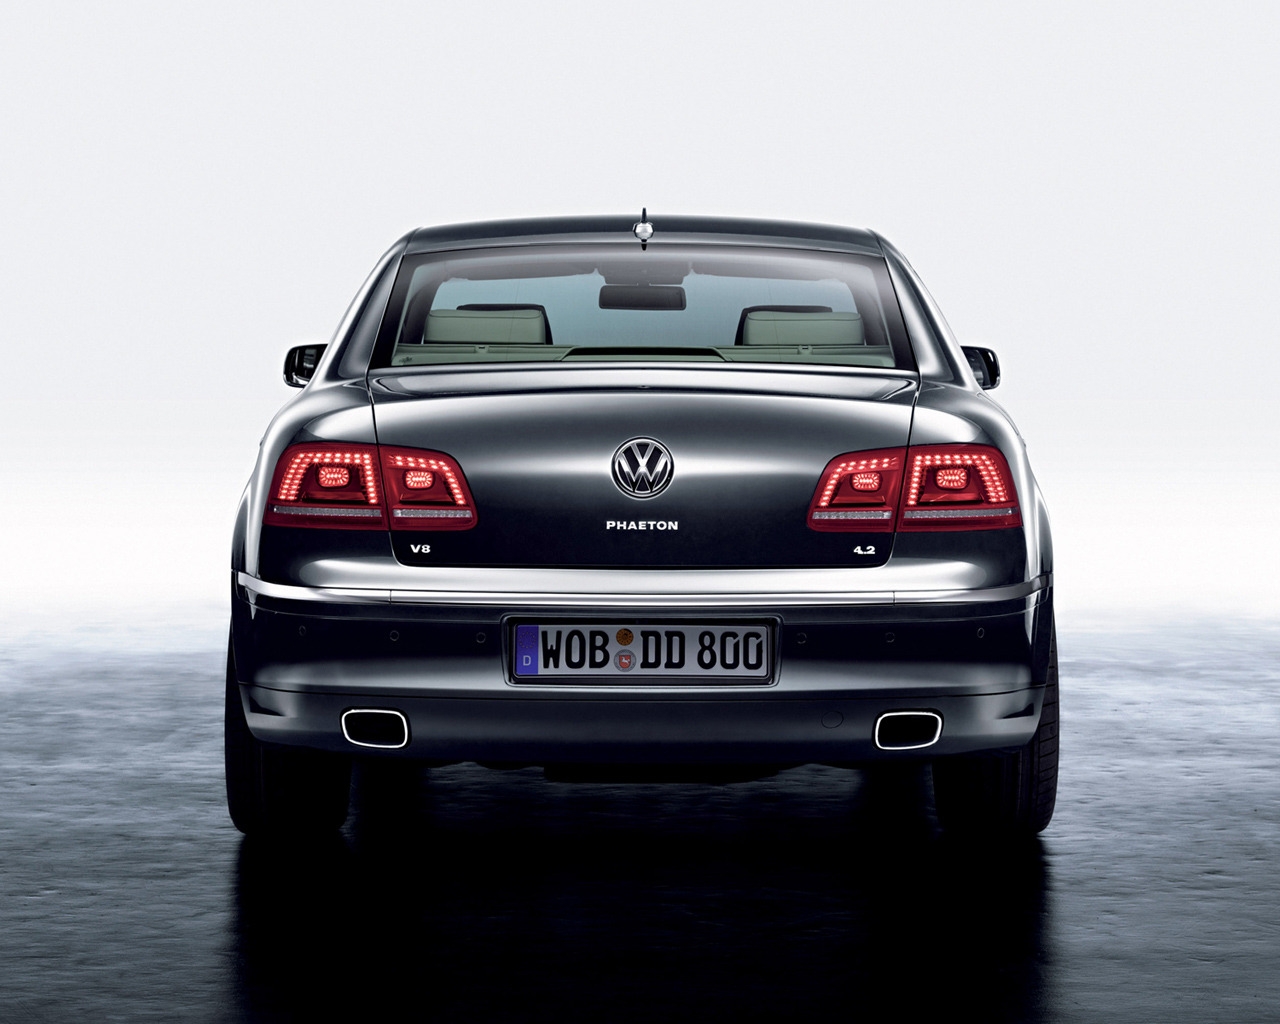 Volkswagen Phaeton Rear for 1280 x 1024 resolution